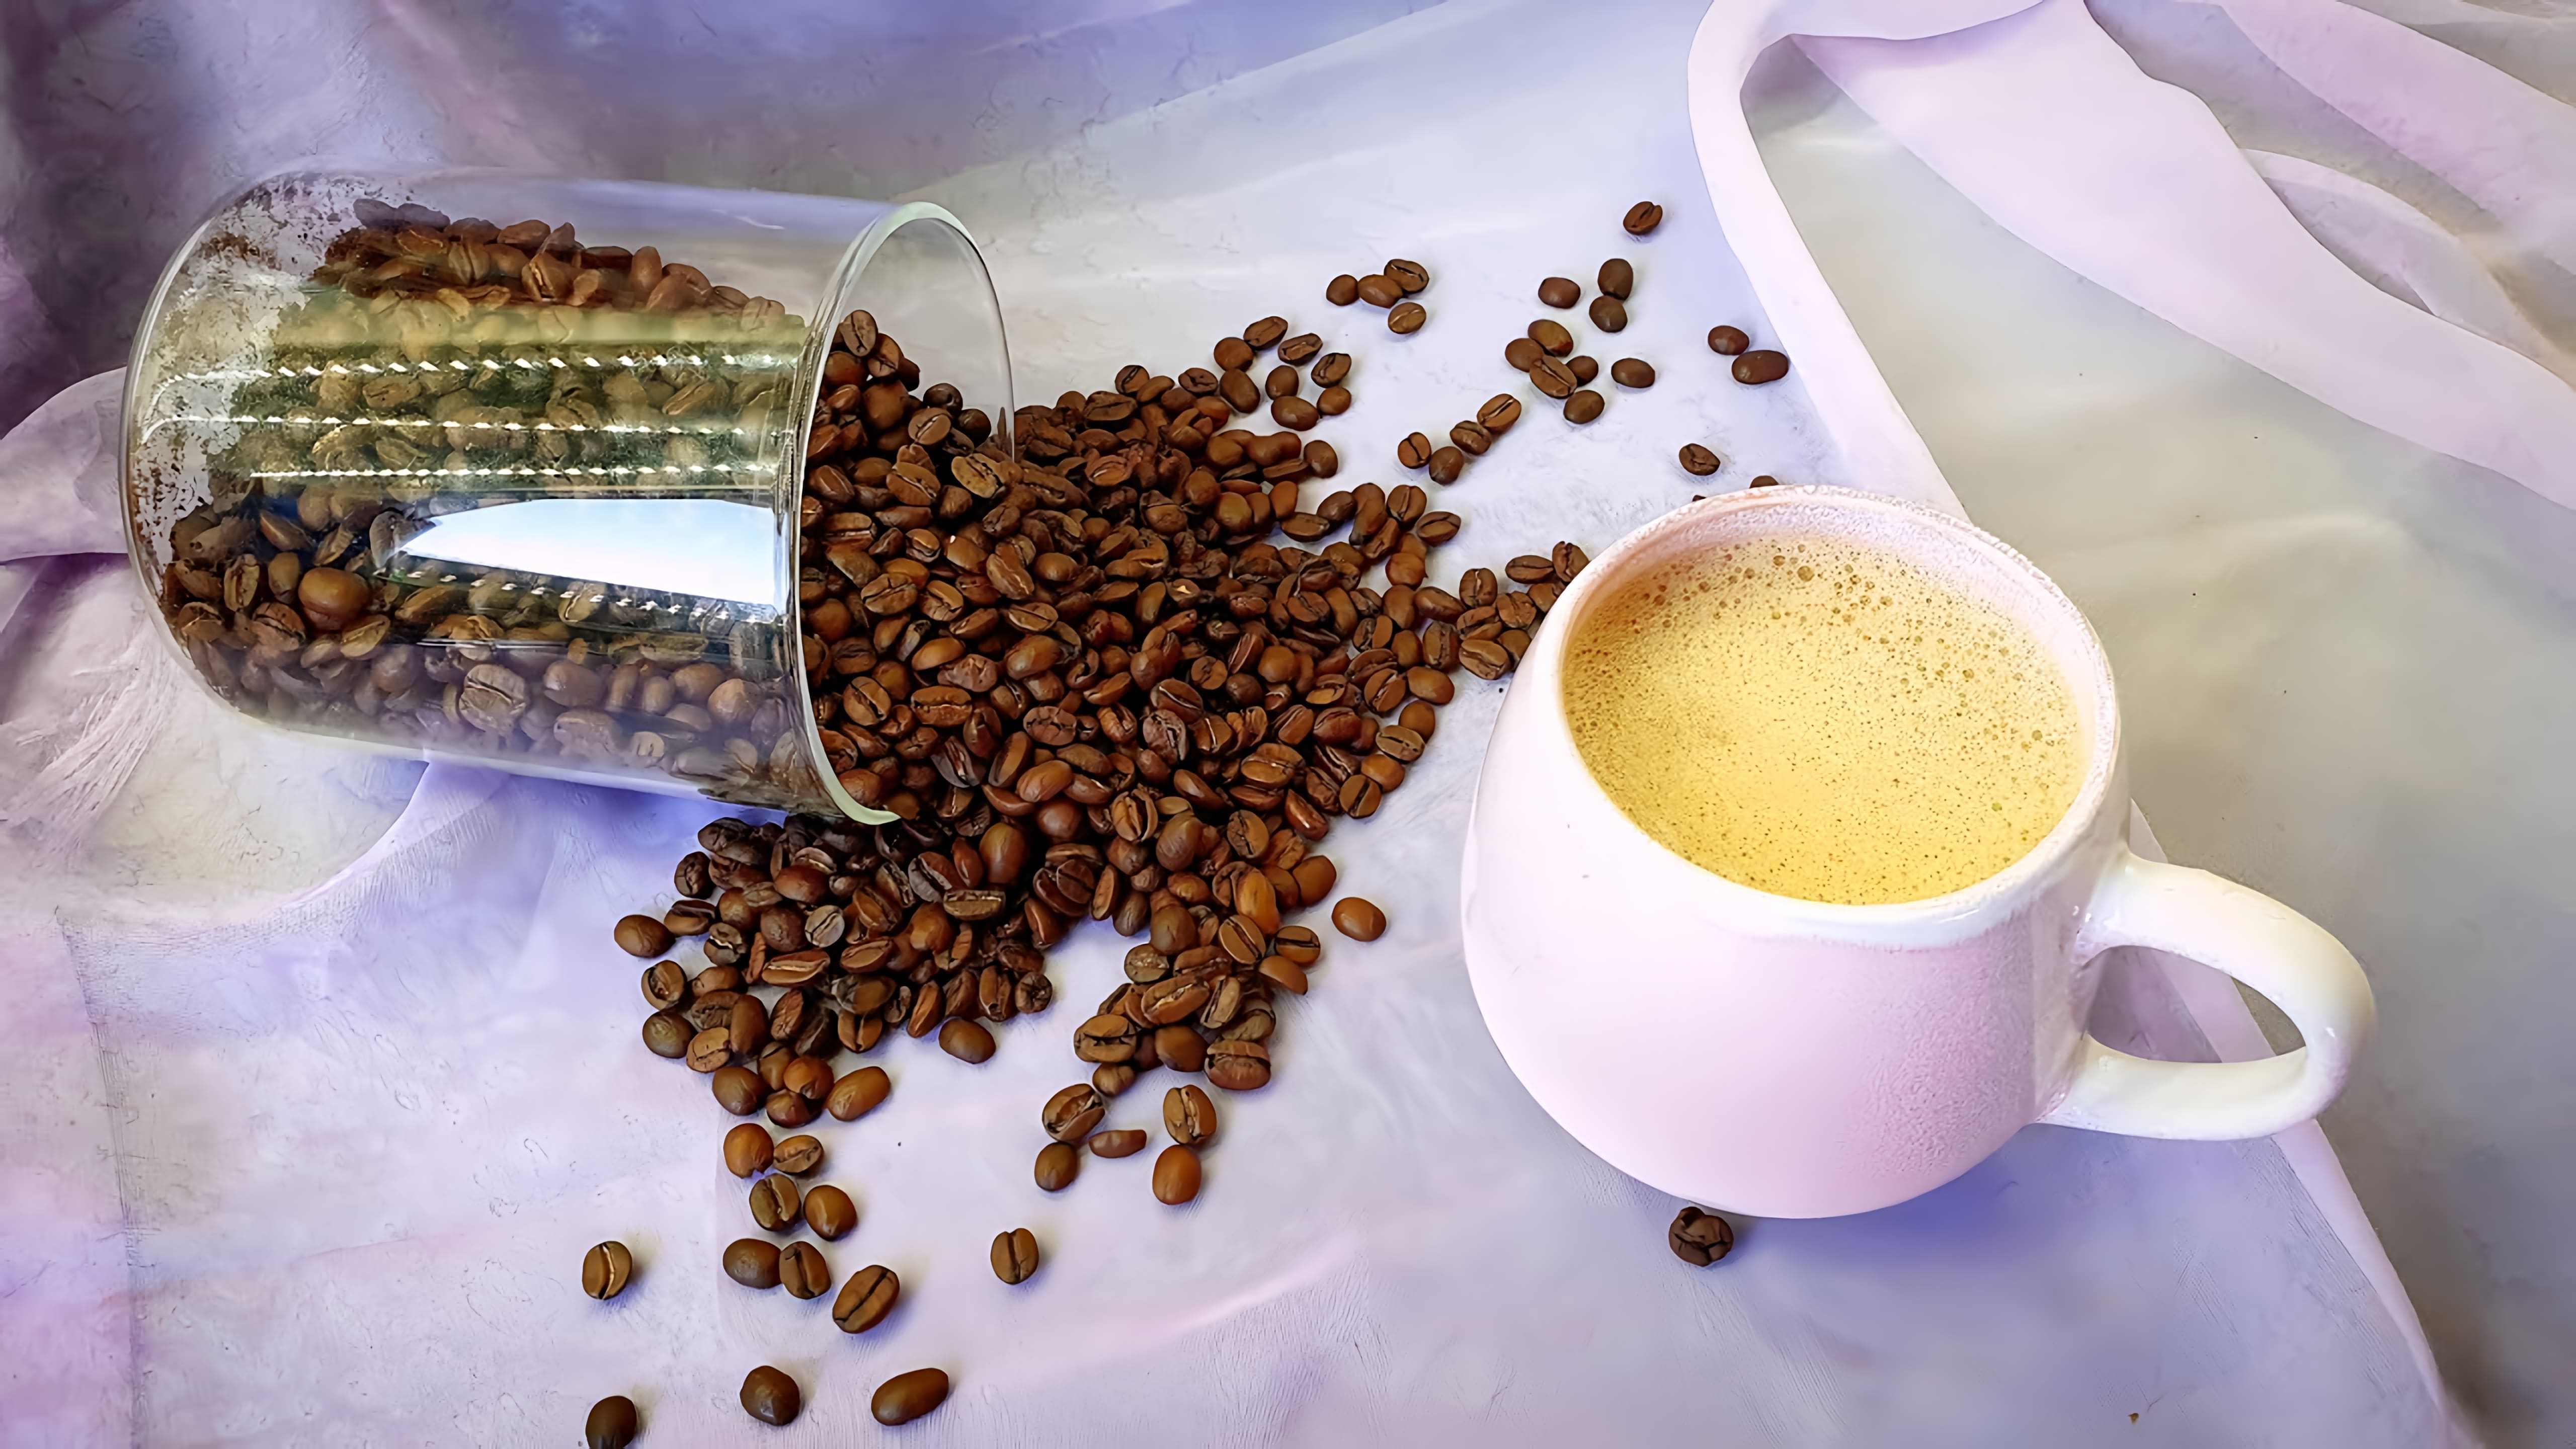 В этом видео поваренок Йонко показывает рецепт бронекофе - кофе с маслом